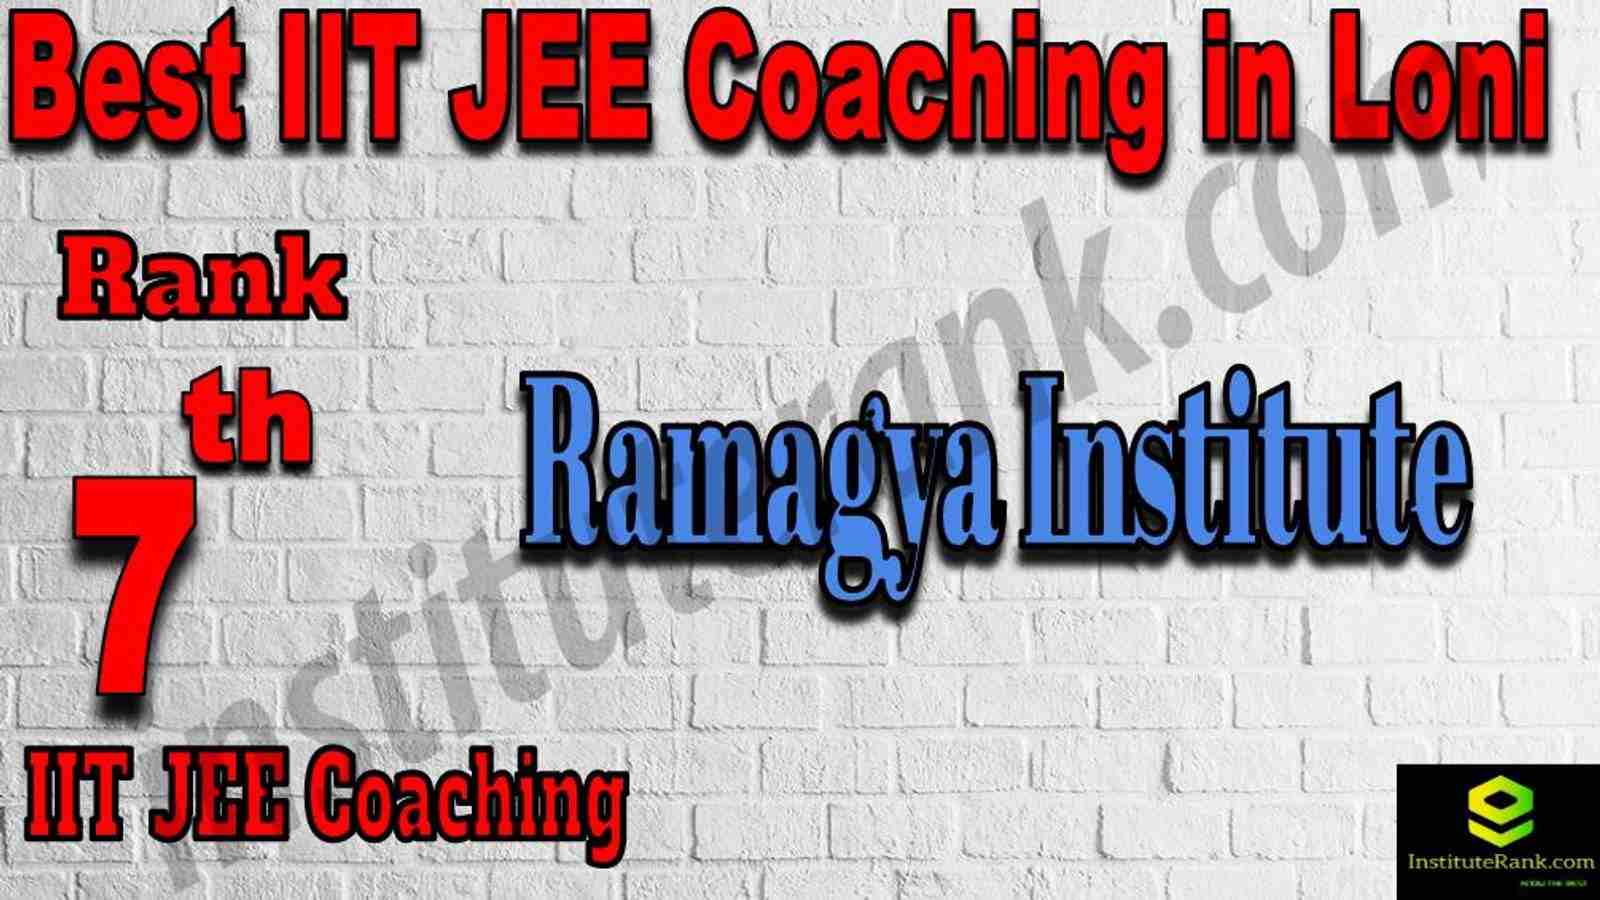 7th Best IIT JEE Coaching in Loni